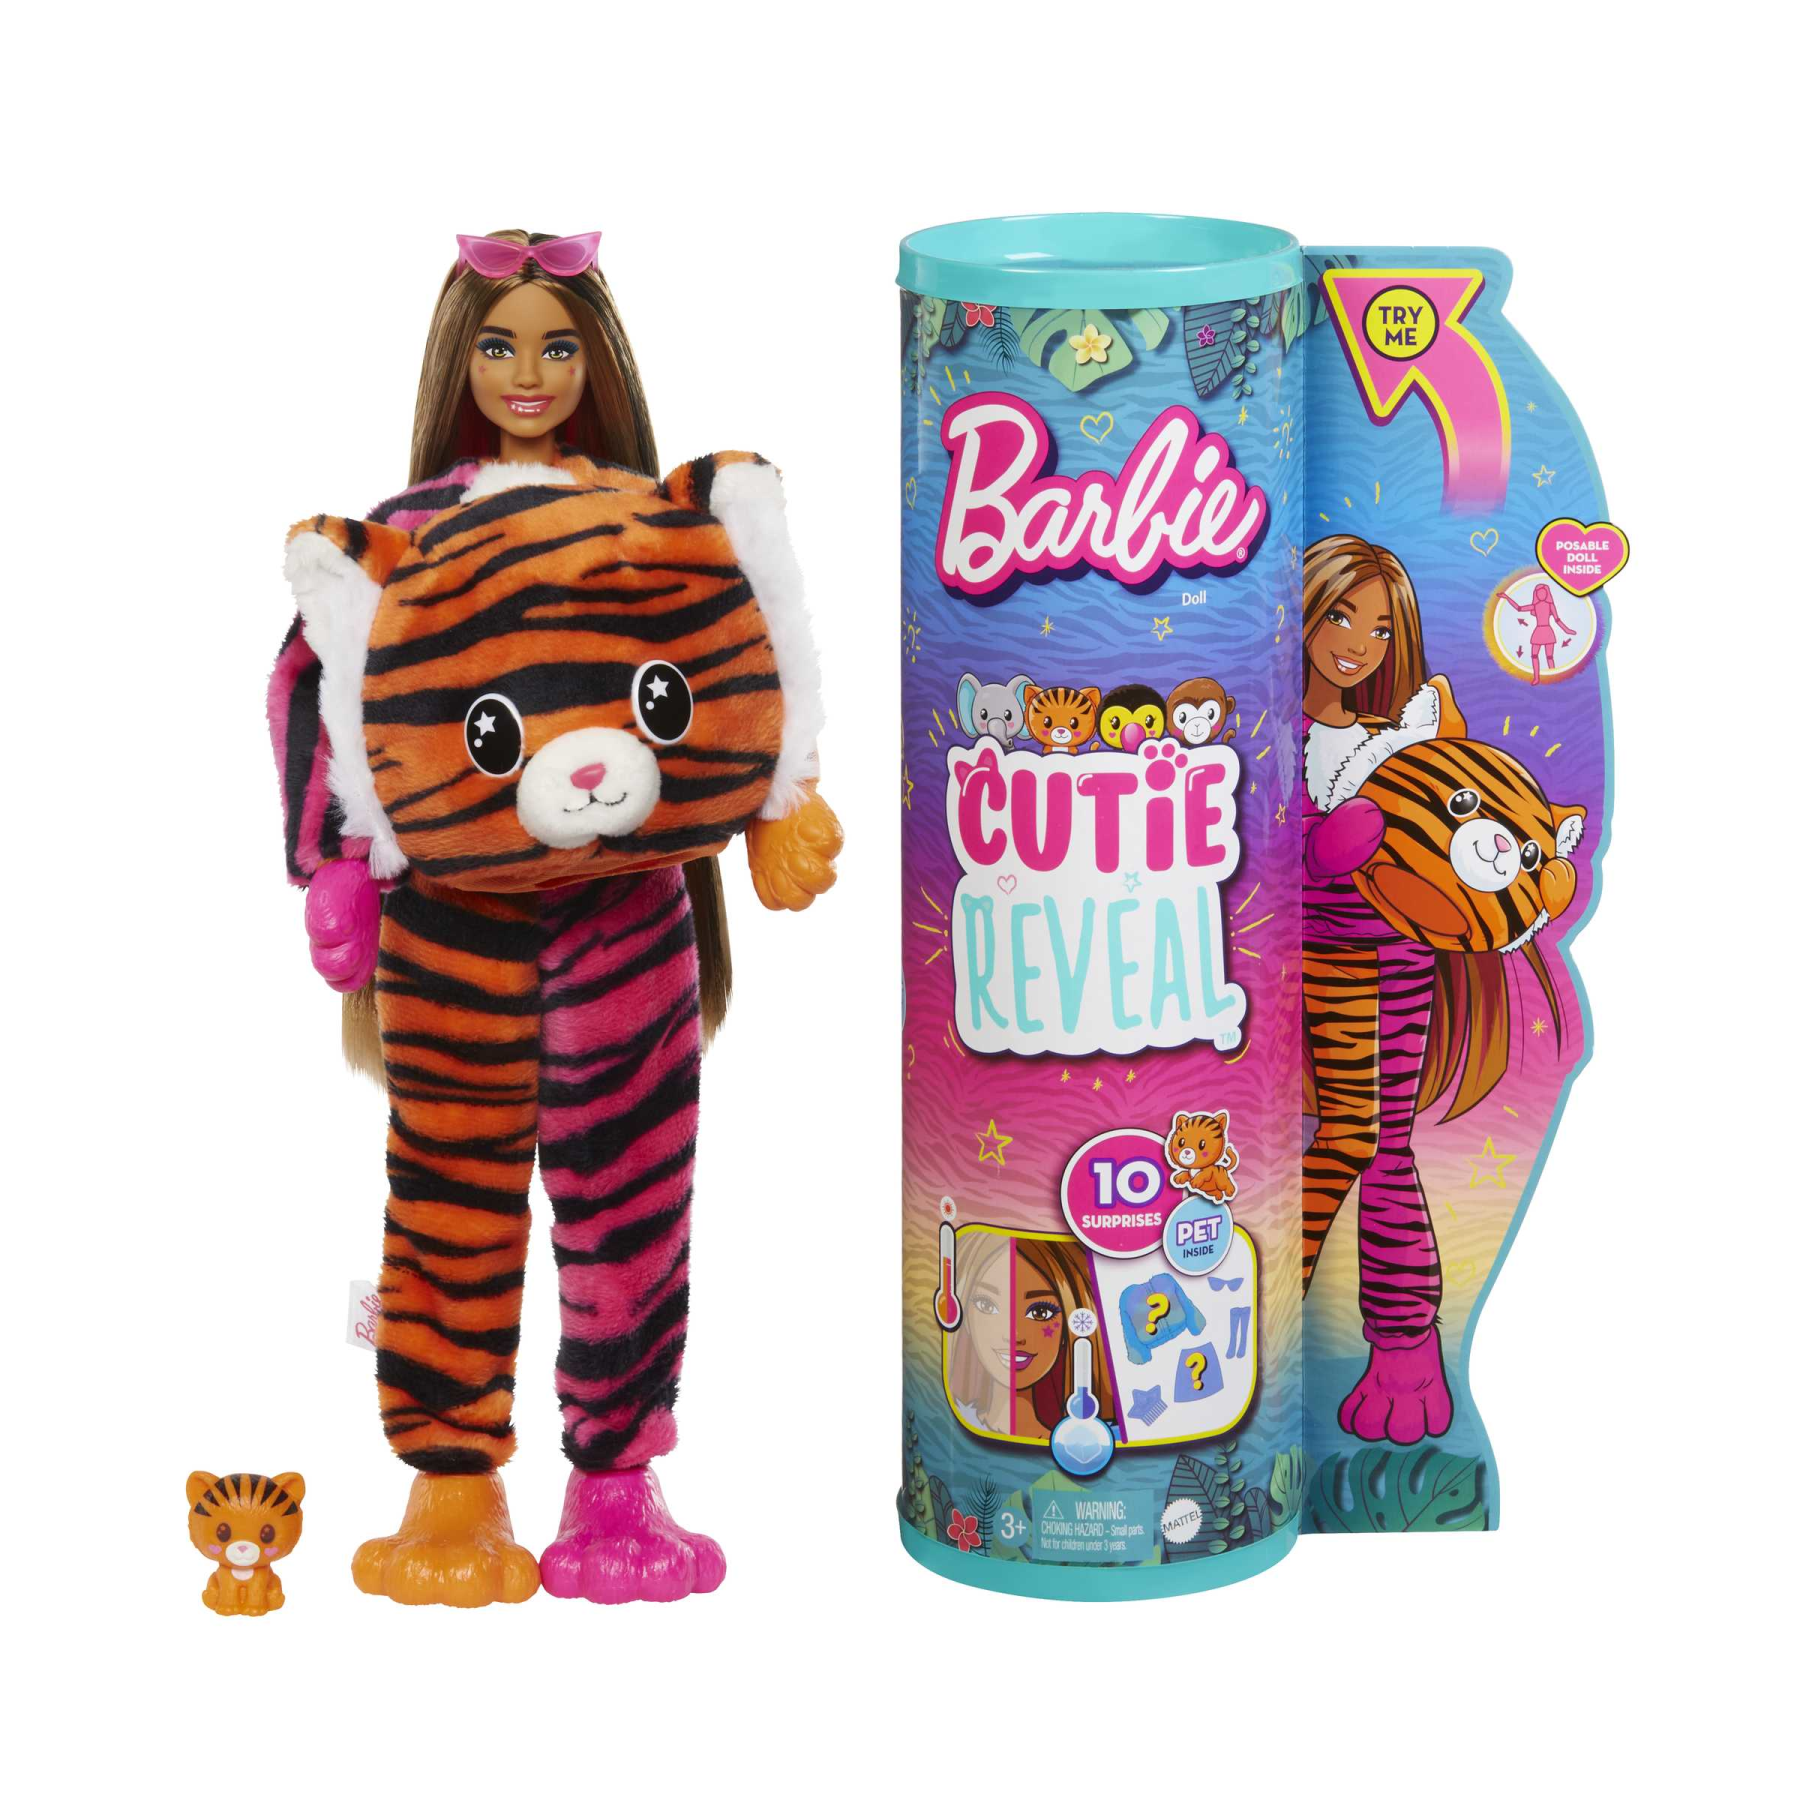 Costume da Tigre per neonato